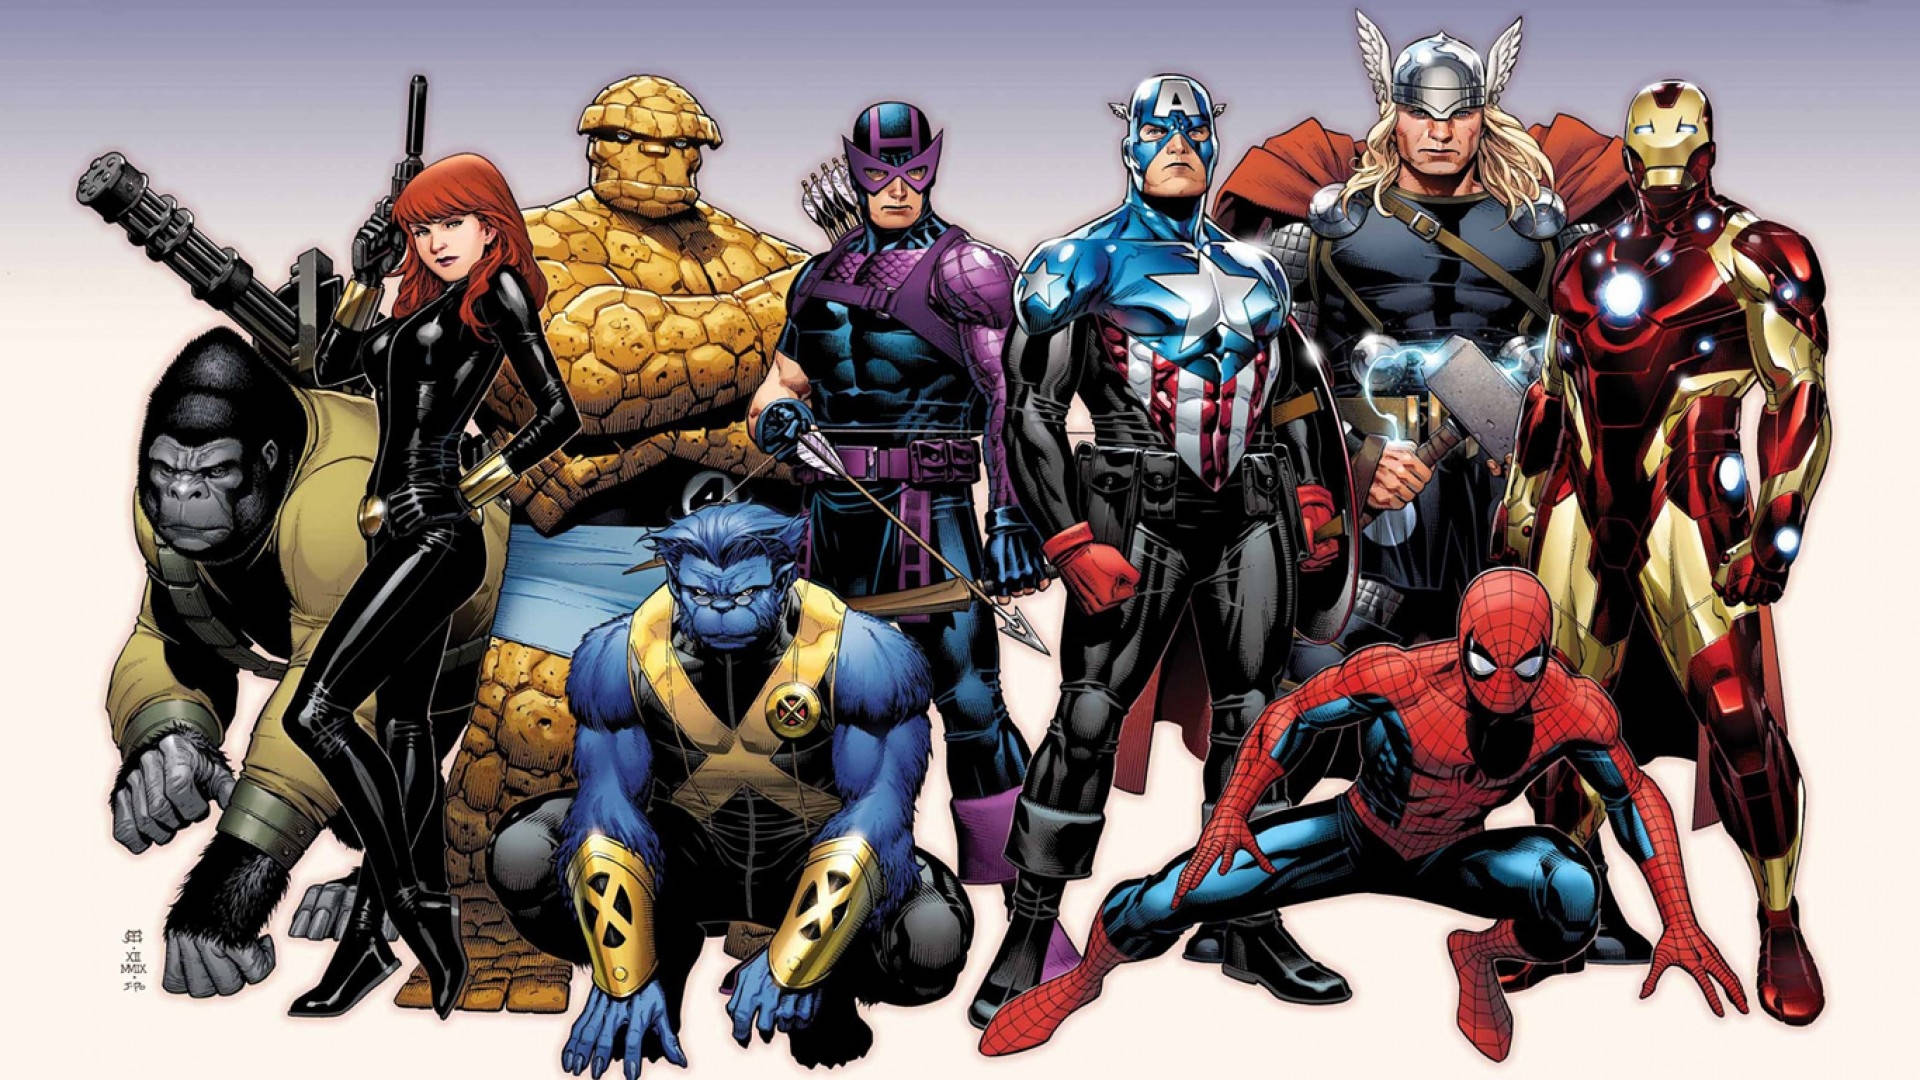 Marvel Superheroes Avengers And X-Men Wallpaper